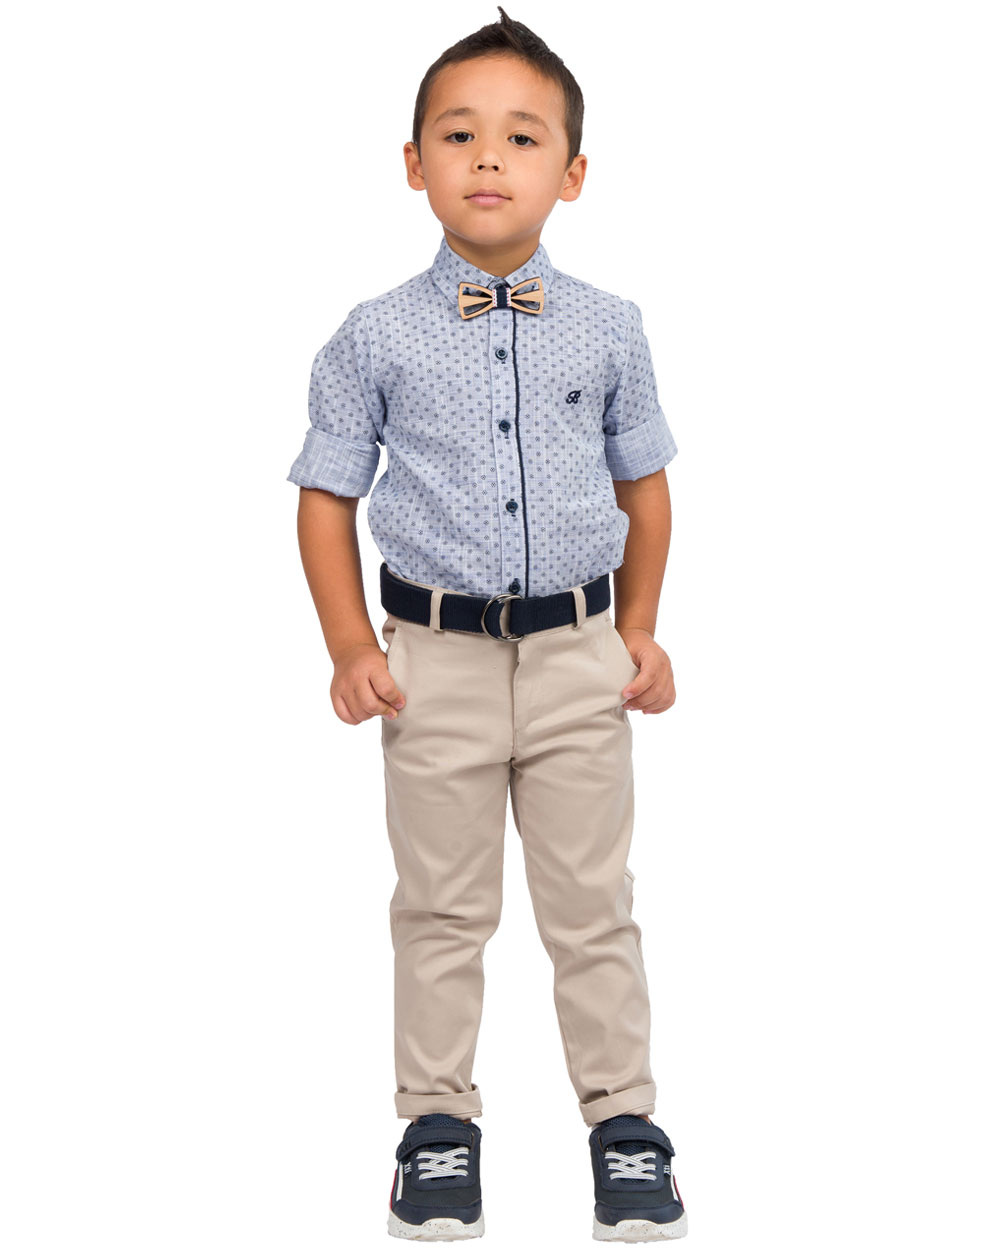 Βαμβακερό μονόχρωμο παντελόνι για αγόρι για επίσημες εμφανίσεις | ΜΠΕΖ ΑΓΟΡΙ 1-6>Παντελόνι